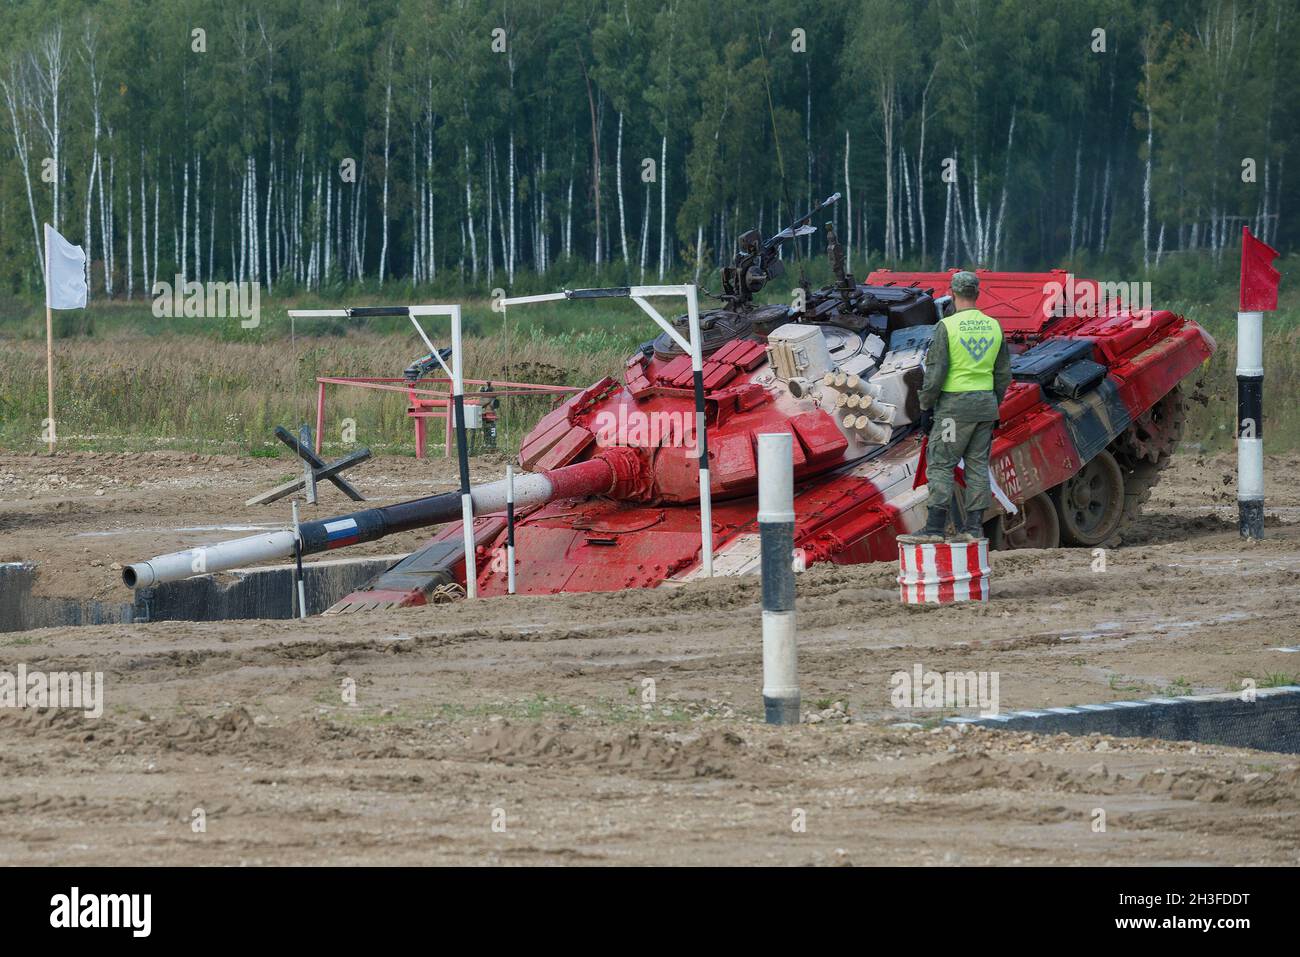 REGIÓN DE MOSCÚ, RUSIA - 27 DE AGOSTO de 2020: Juegos internacionales de guerra, biatlón tanque. El tanque del equipo ruso supera el obstáculo 'Moat' Foto de stock